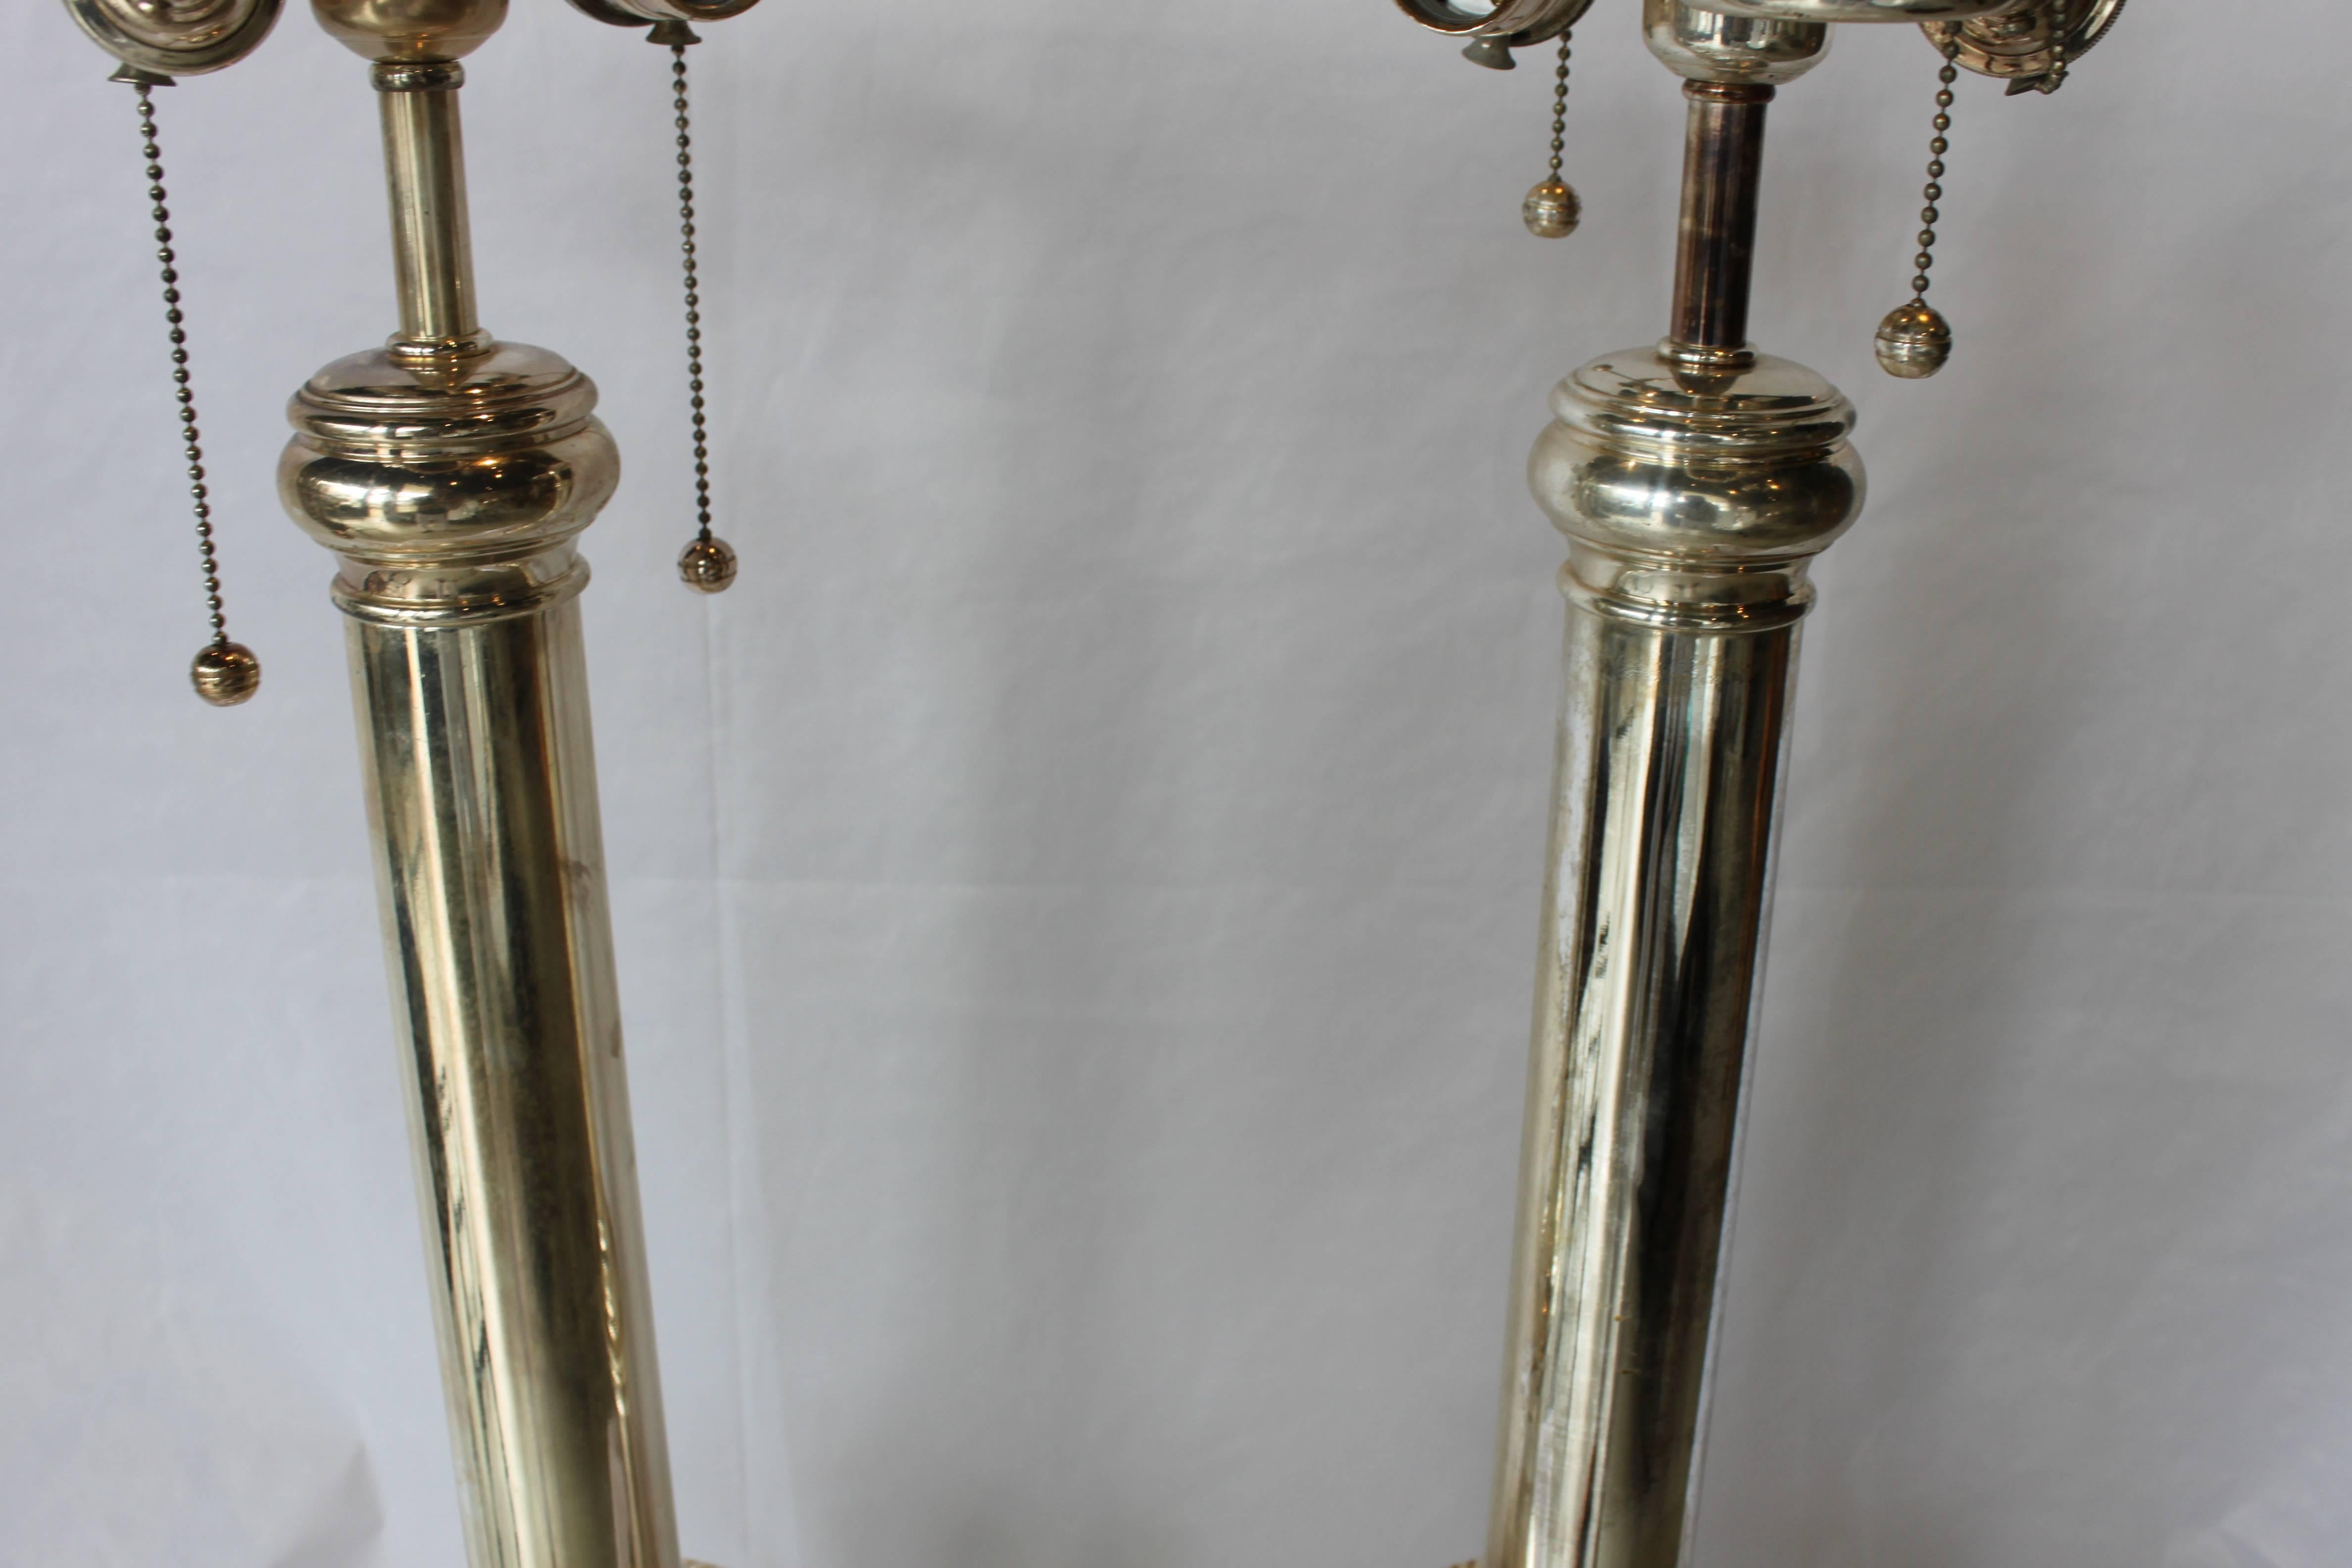 Modern Classical Silver Lamps by Ralph Lauren